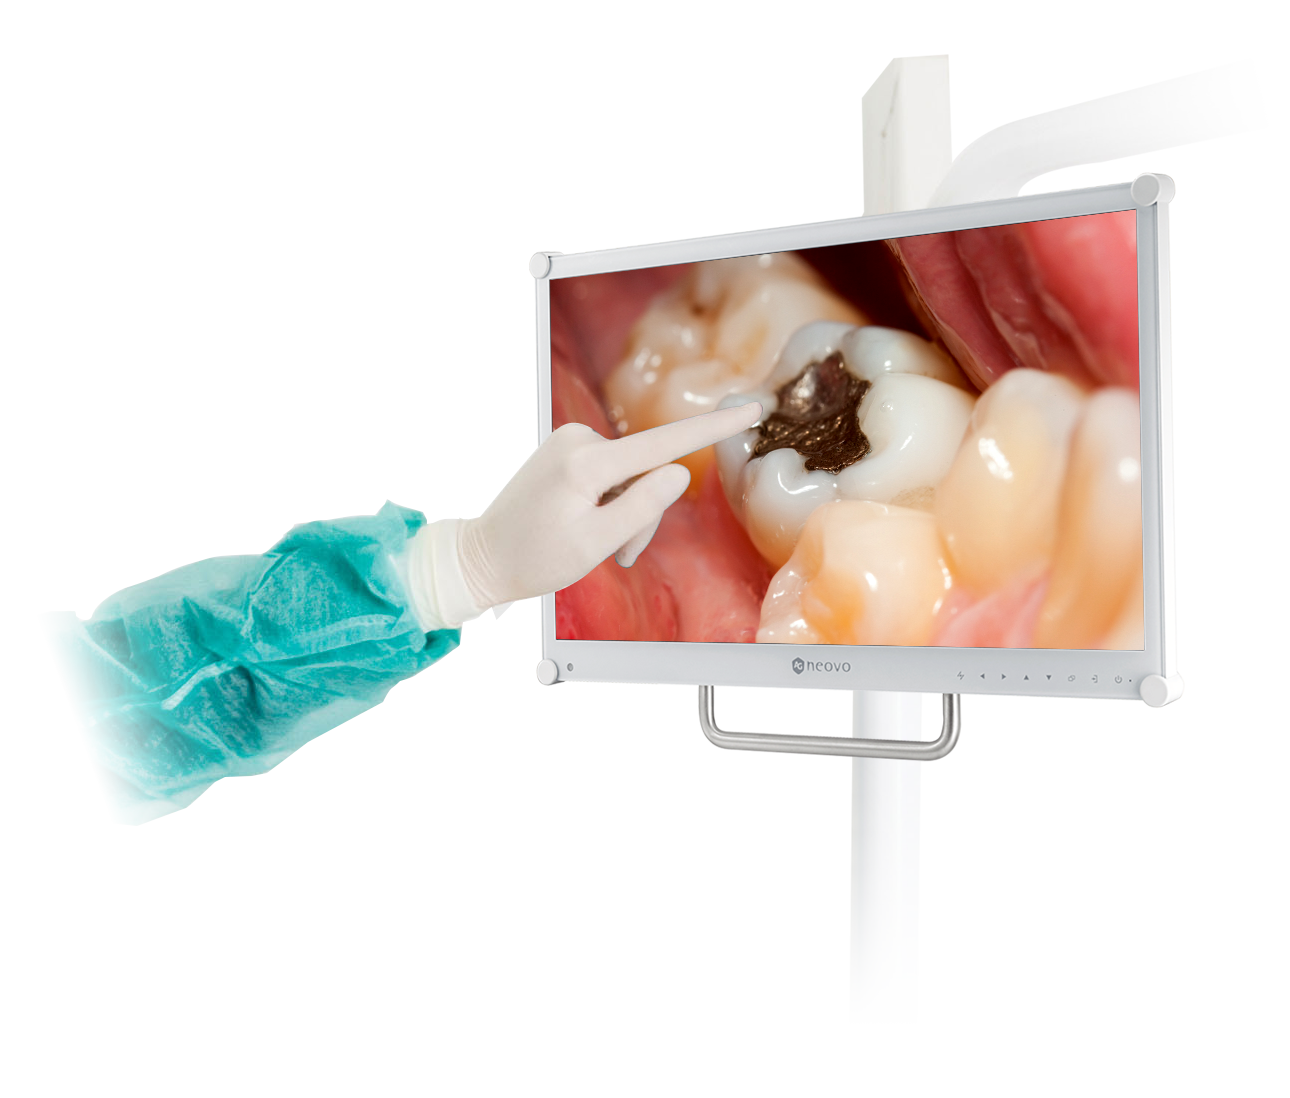 Серия DR специально разработана для применения в стоматологических кабинетах и соответствует стандарту EN / IEC 60601-1